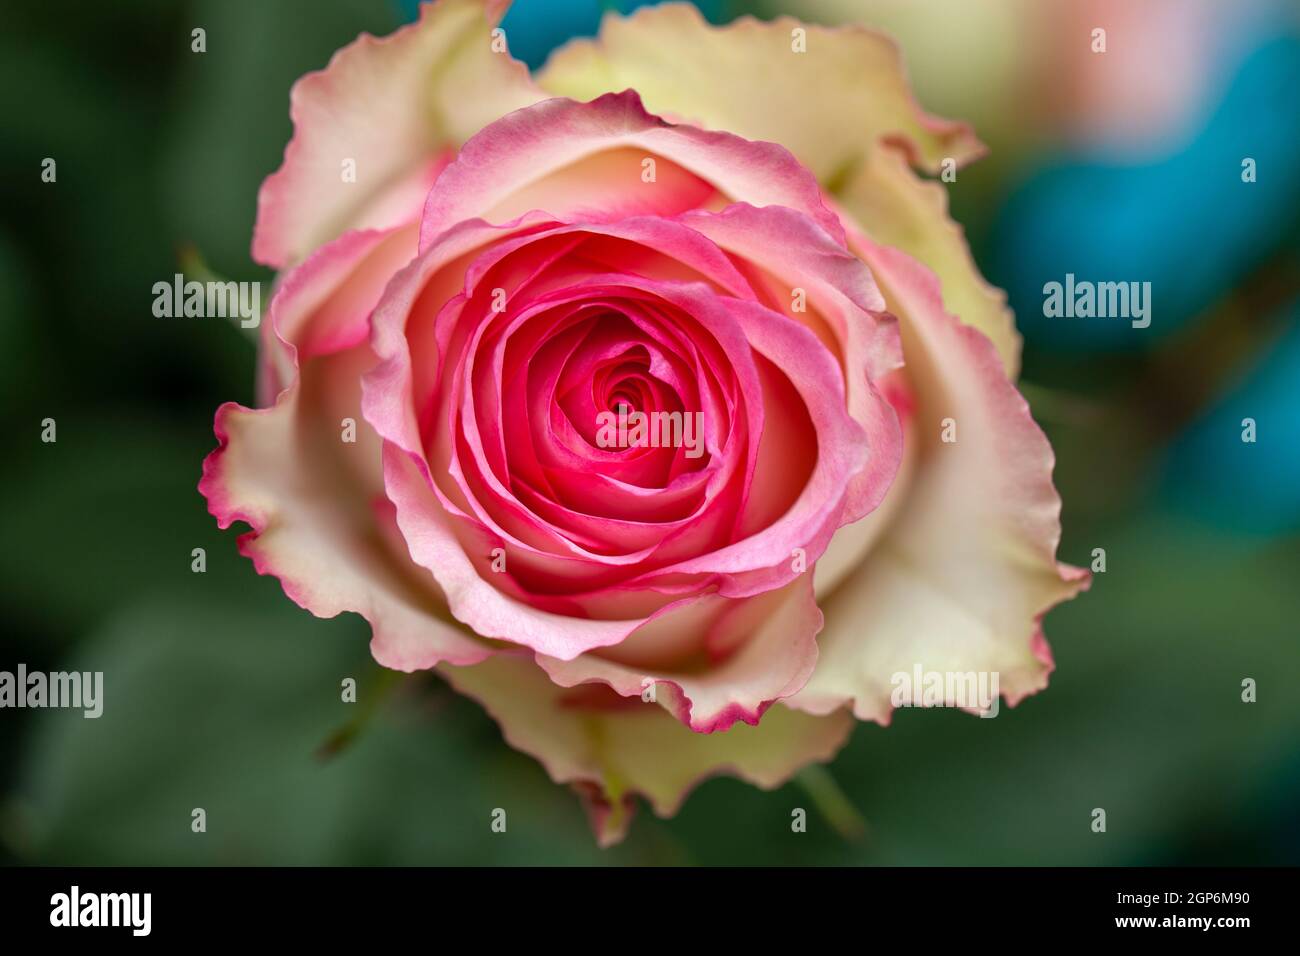 Bellissimo fiore rosa e bianco fiore di rosa nel giardino Foto Stock